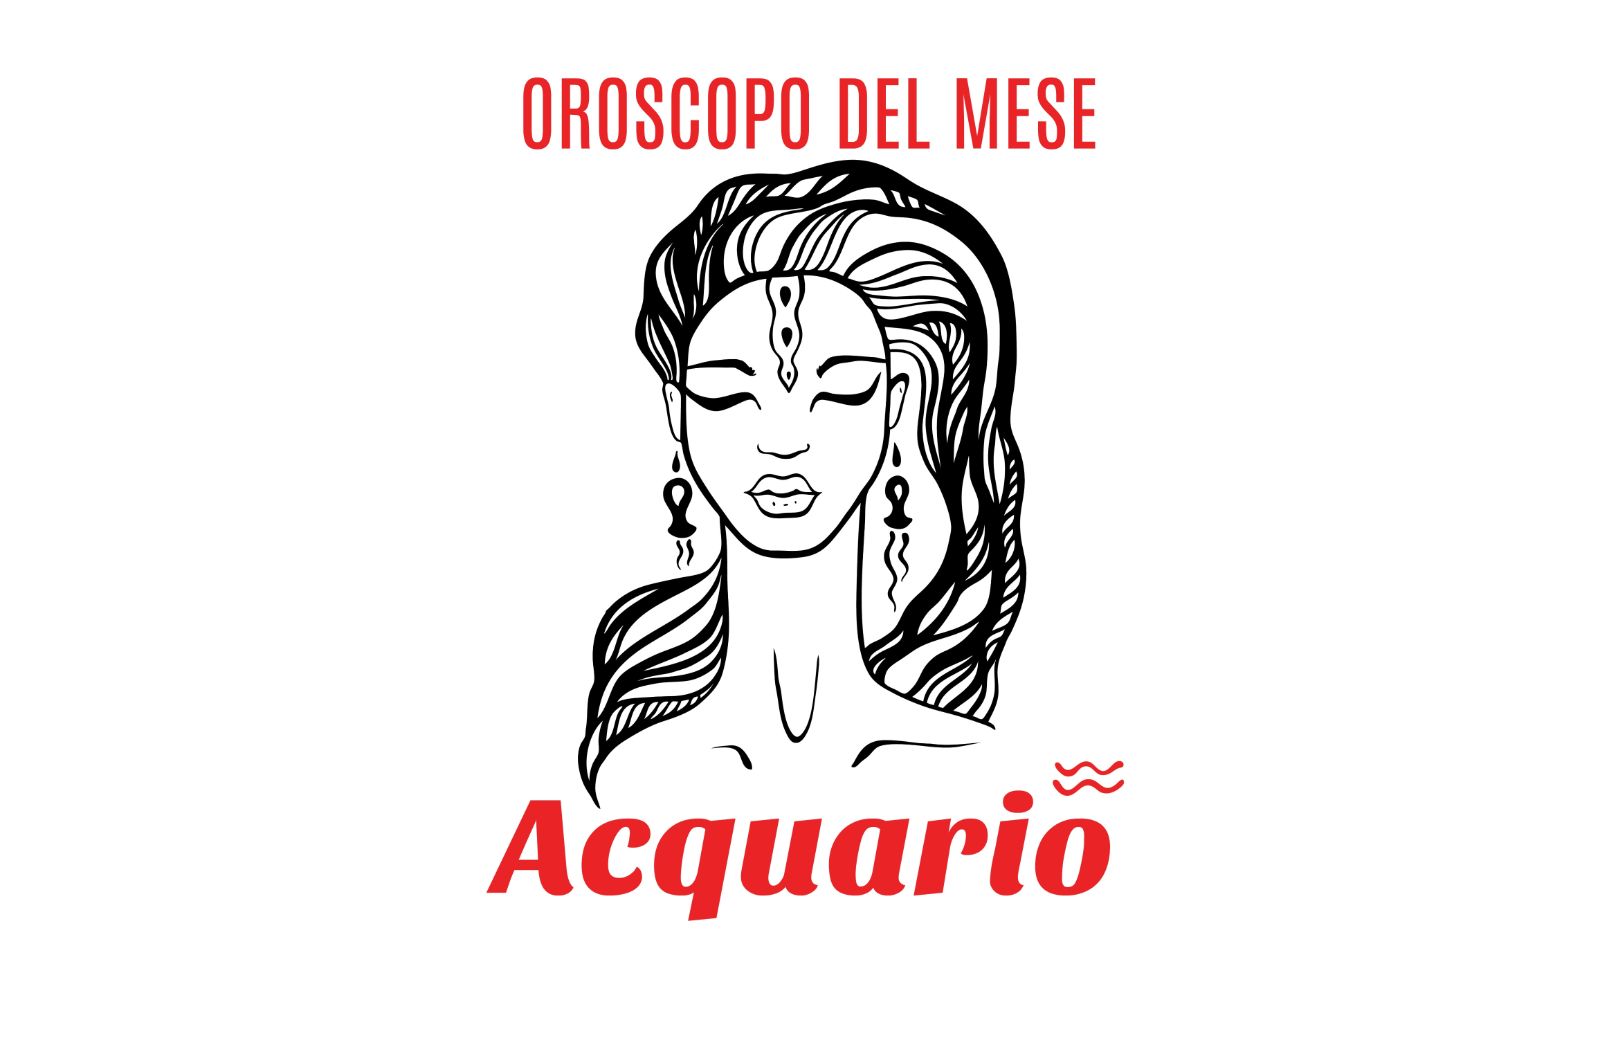 Oroscopo del mese: Acquario - aprile 2019